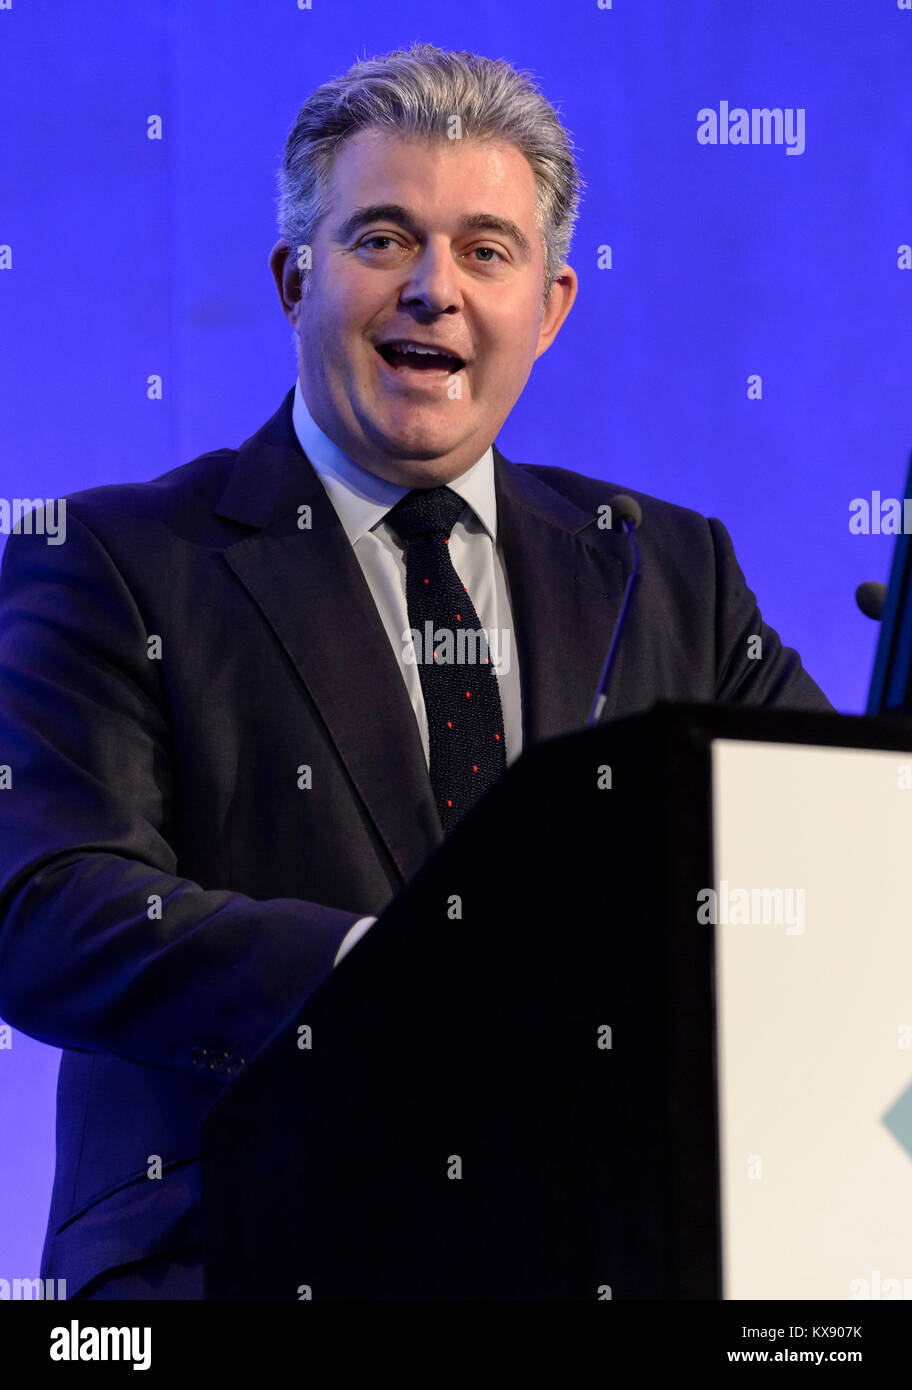 MP Brandon Lewis s'exprimant lors d'une conférence en 2016 à Londres. Il a été nommé président du parti conservateur et ministre sans portefeuille en 2018 Banque D'Images